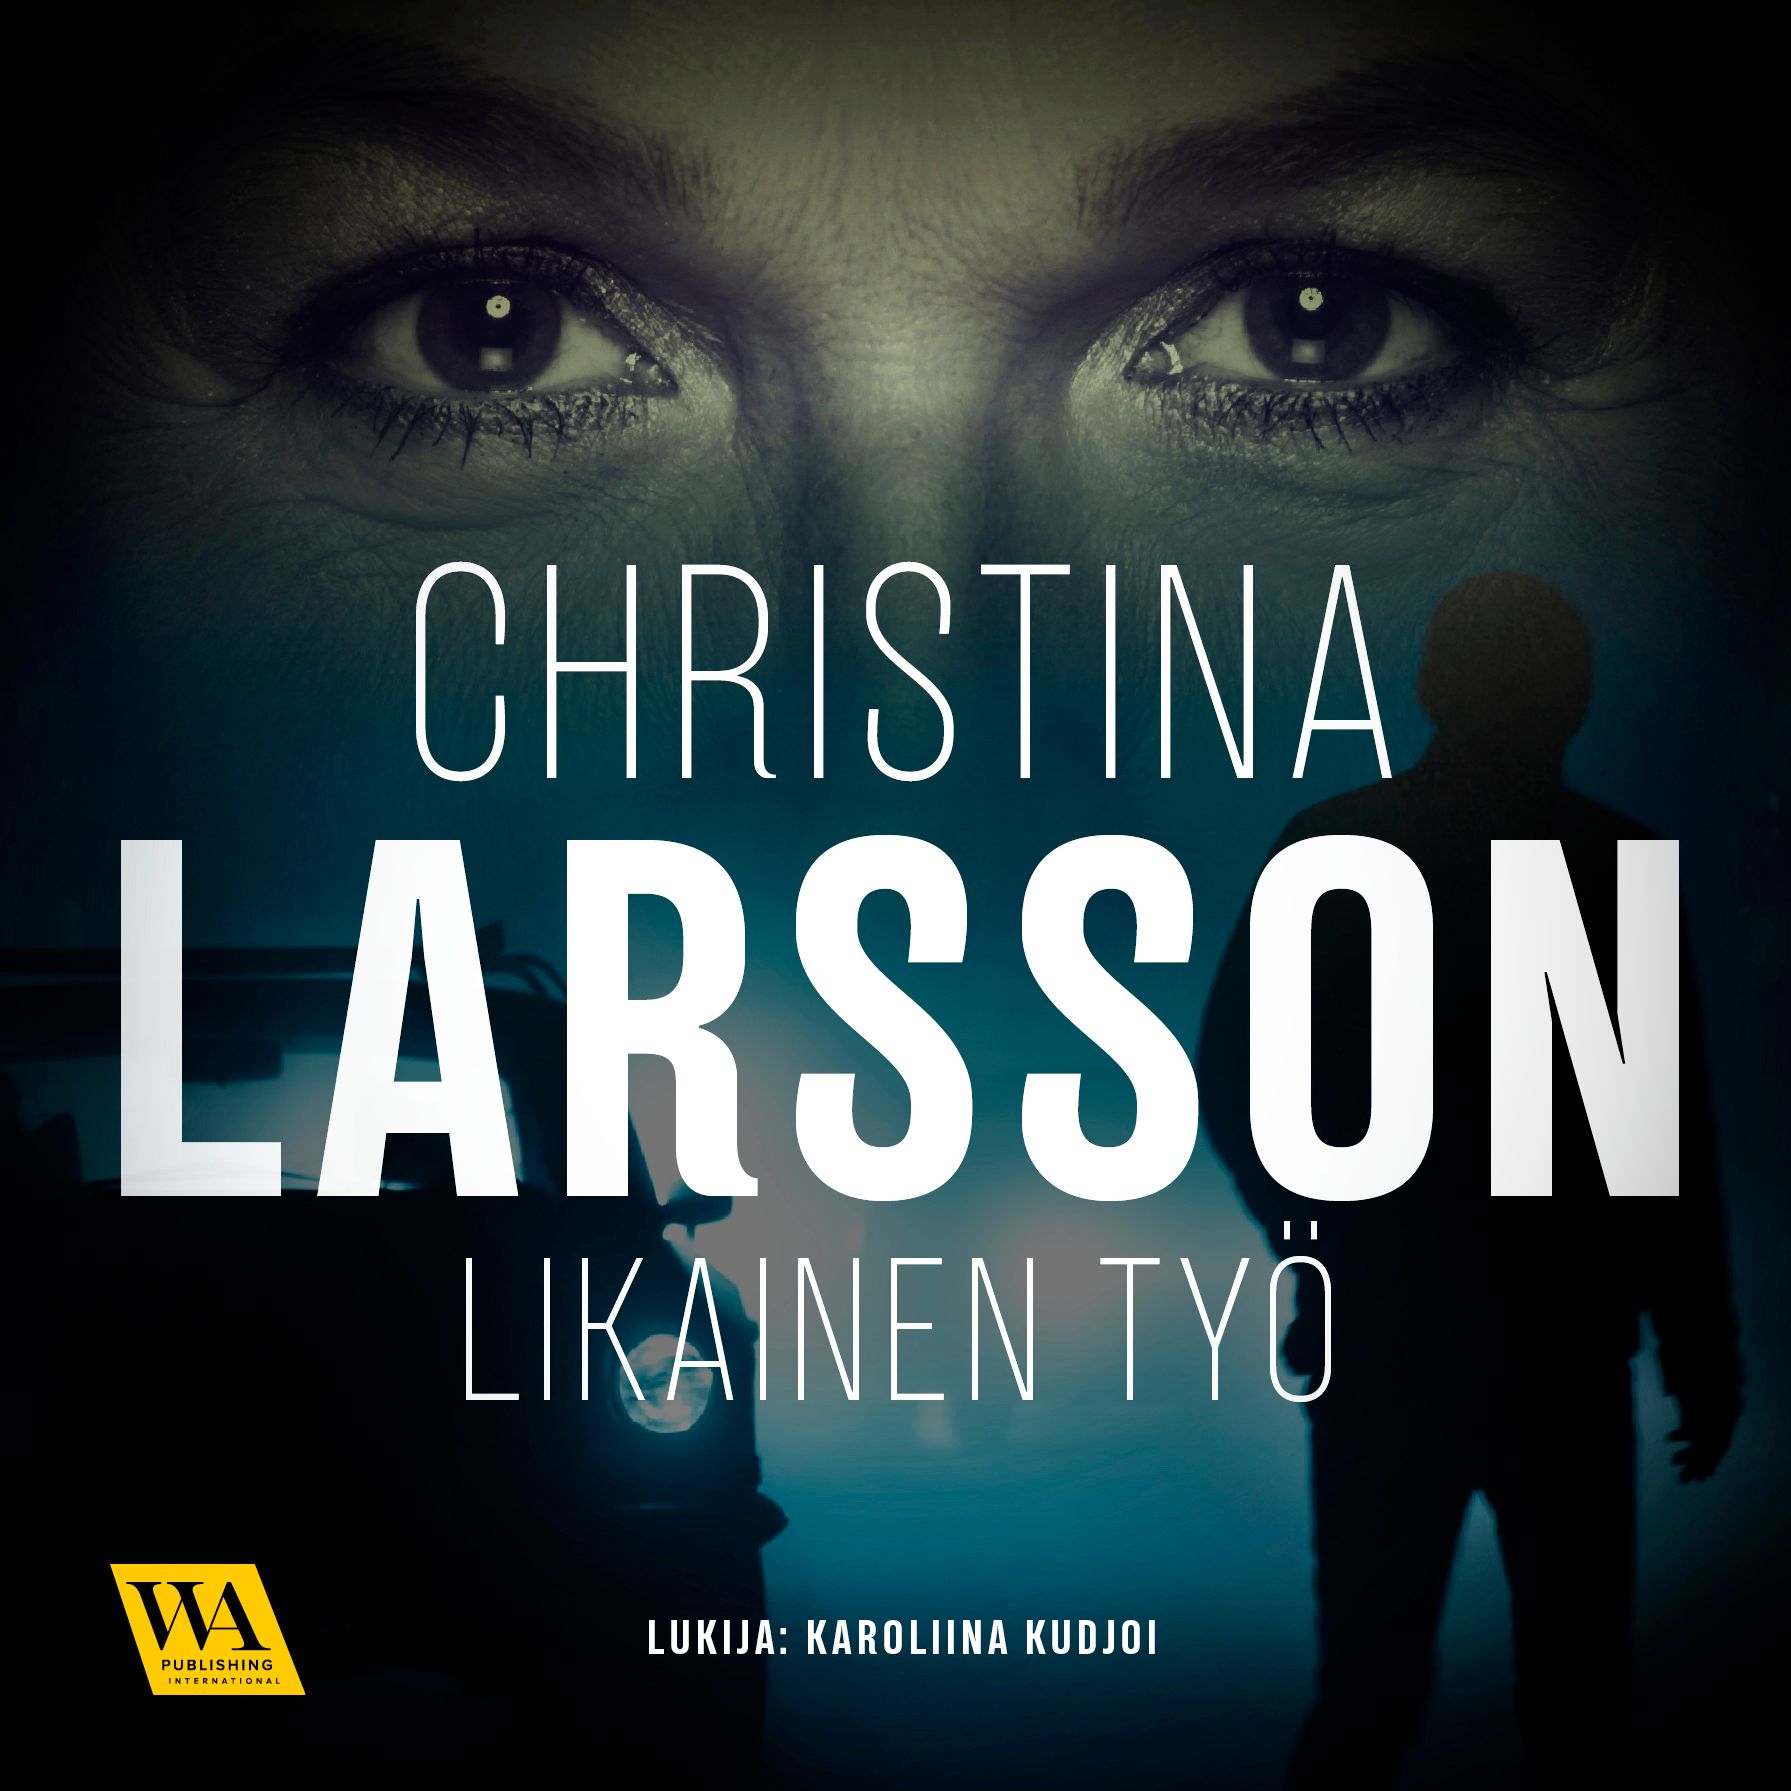 Likainen työ, ljudbok av Christina Larsson